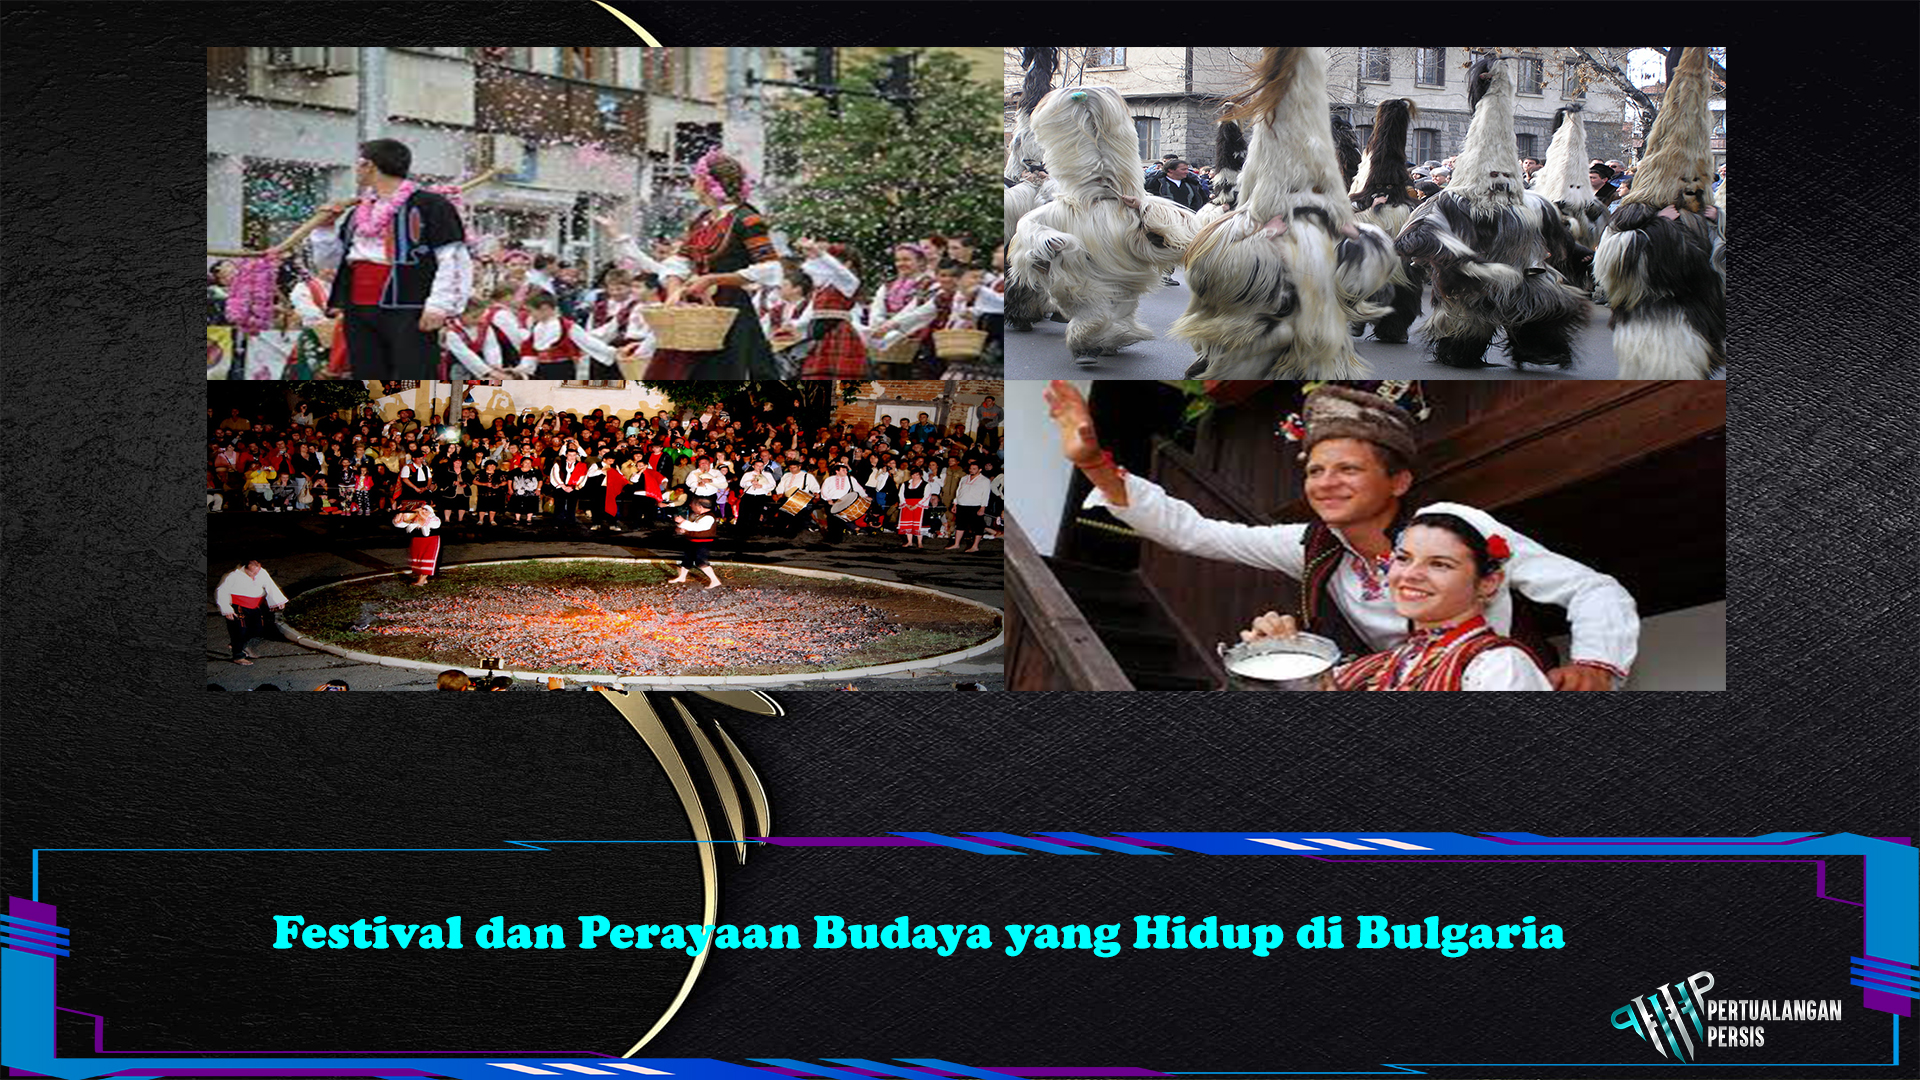 Festival dan Perayaan Budaya yang Hidup di Bulgaria